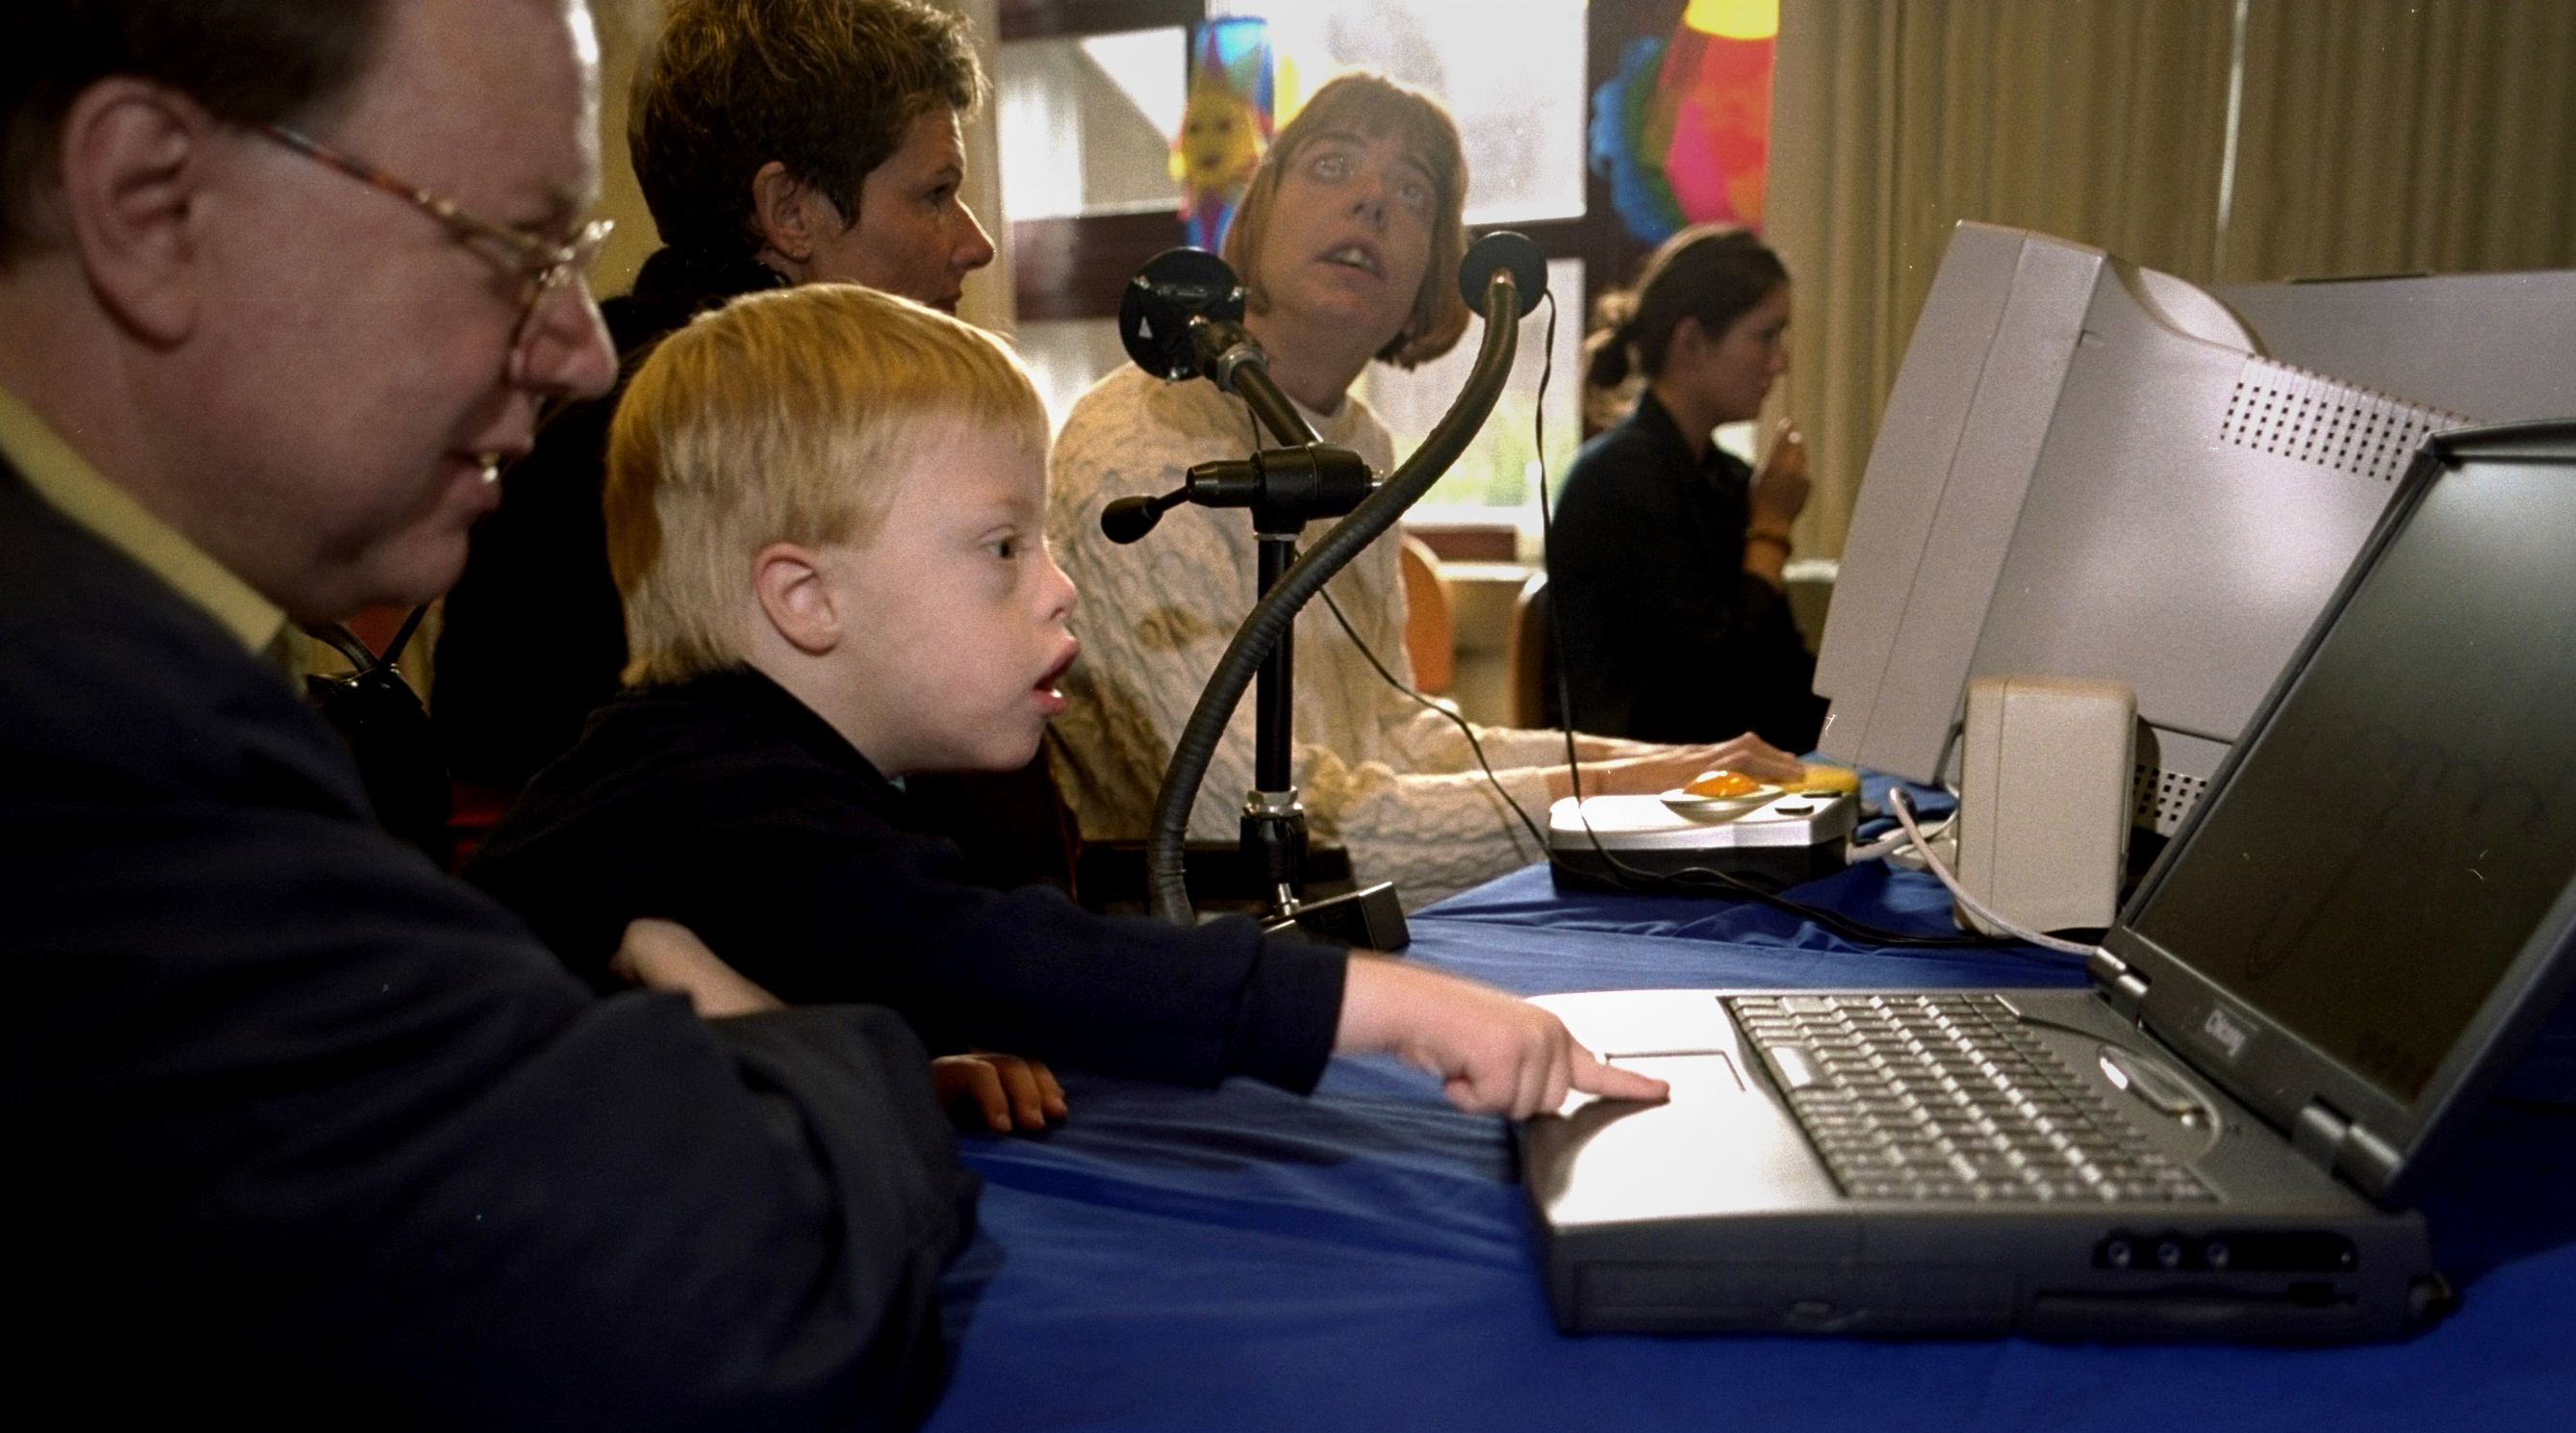 パソコンで遊ぶ幼児の写真